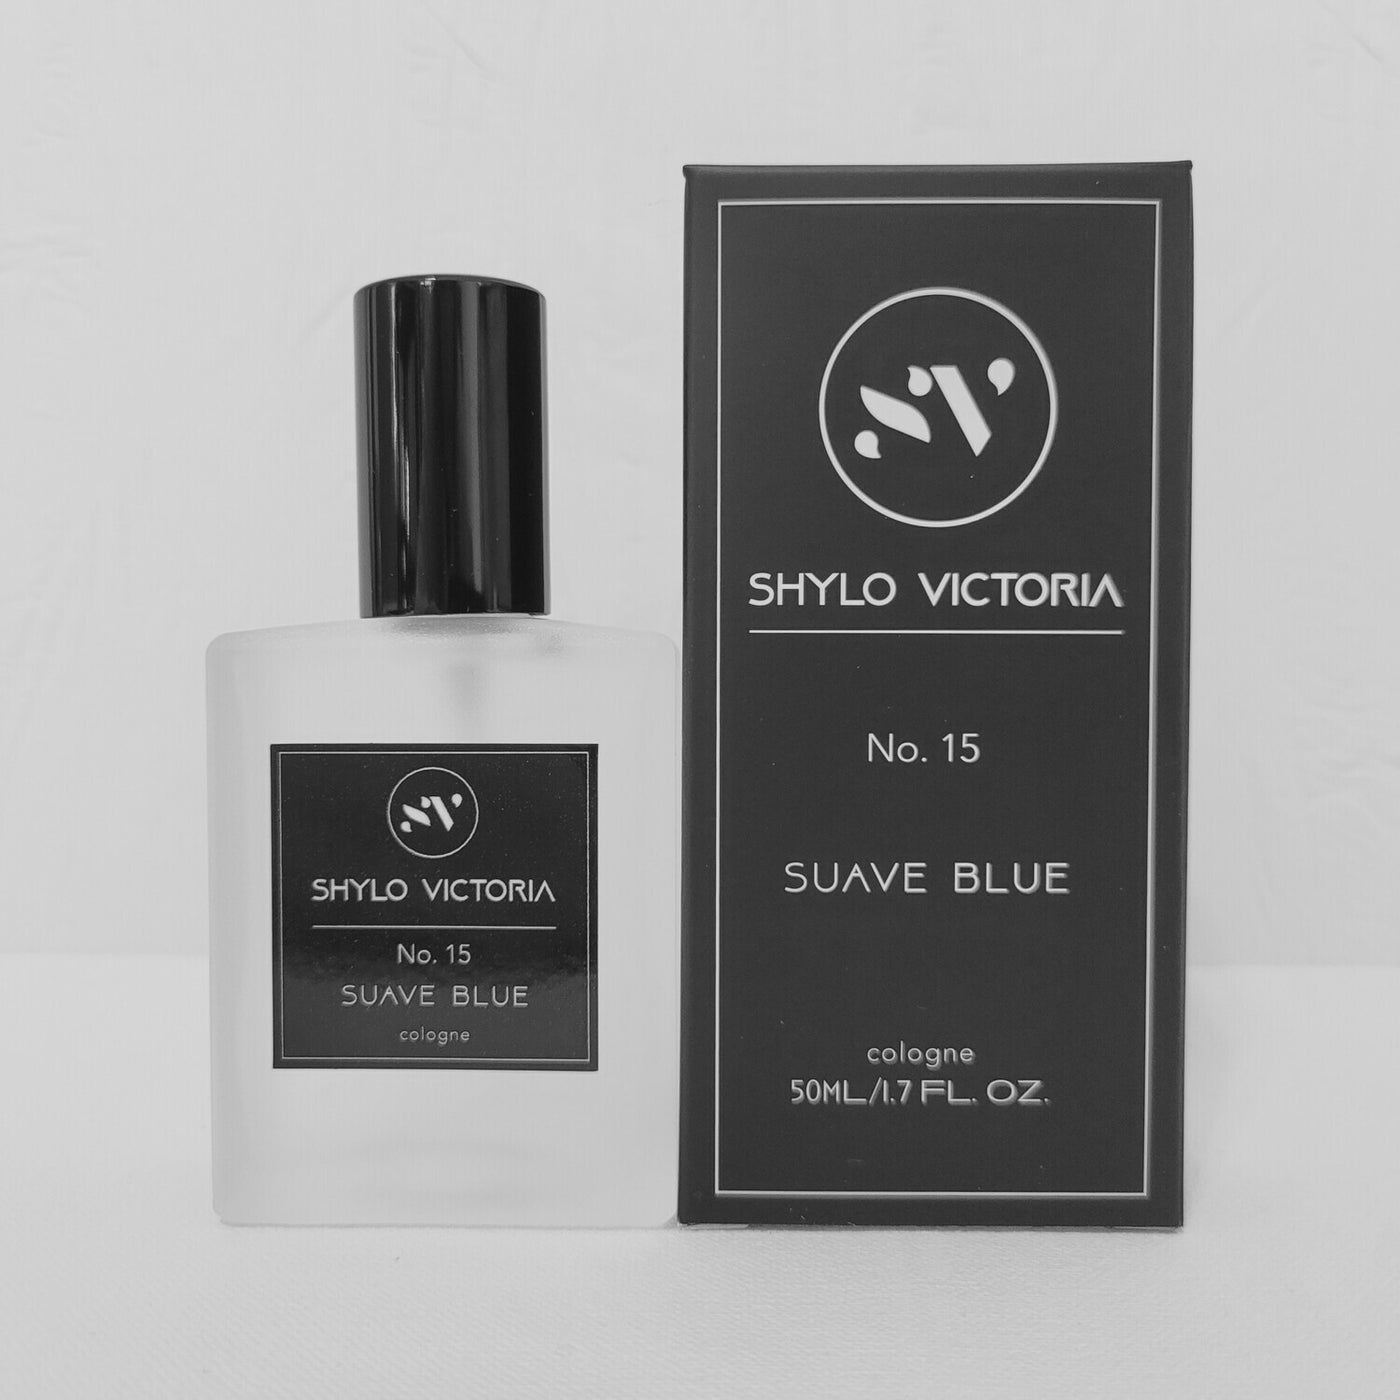 Shylo Victoria No. 15 Suave Blue